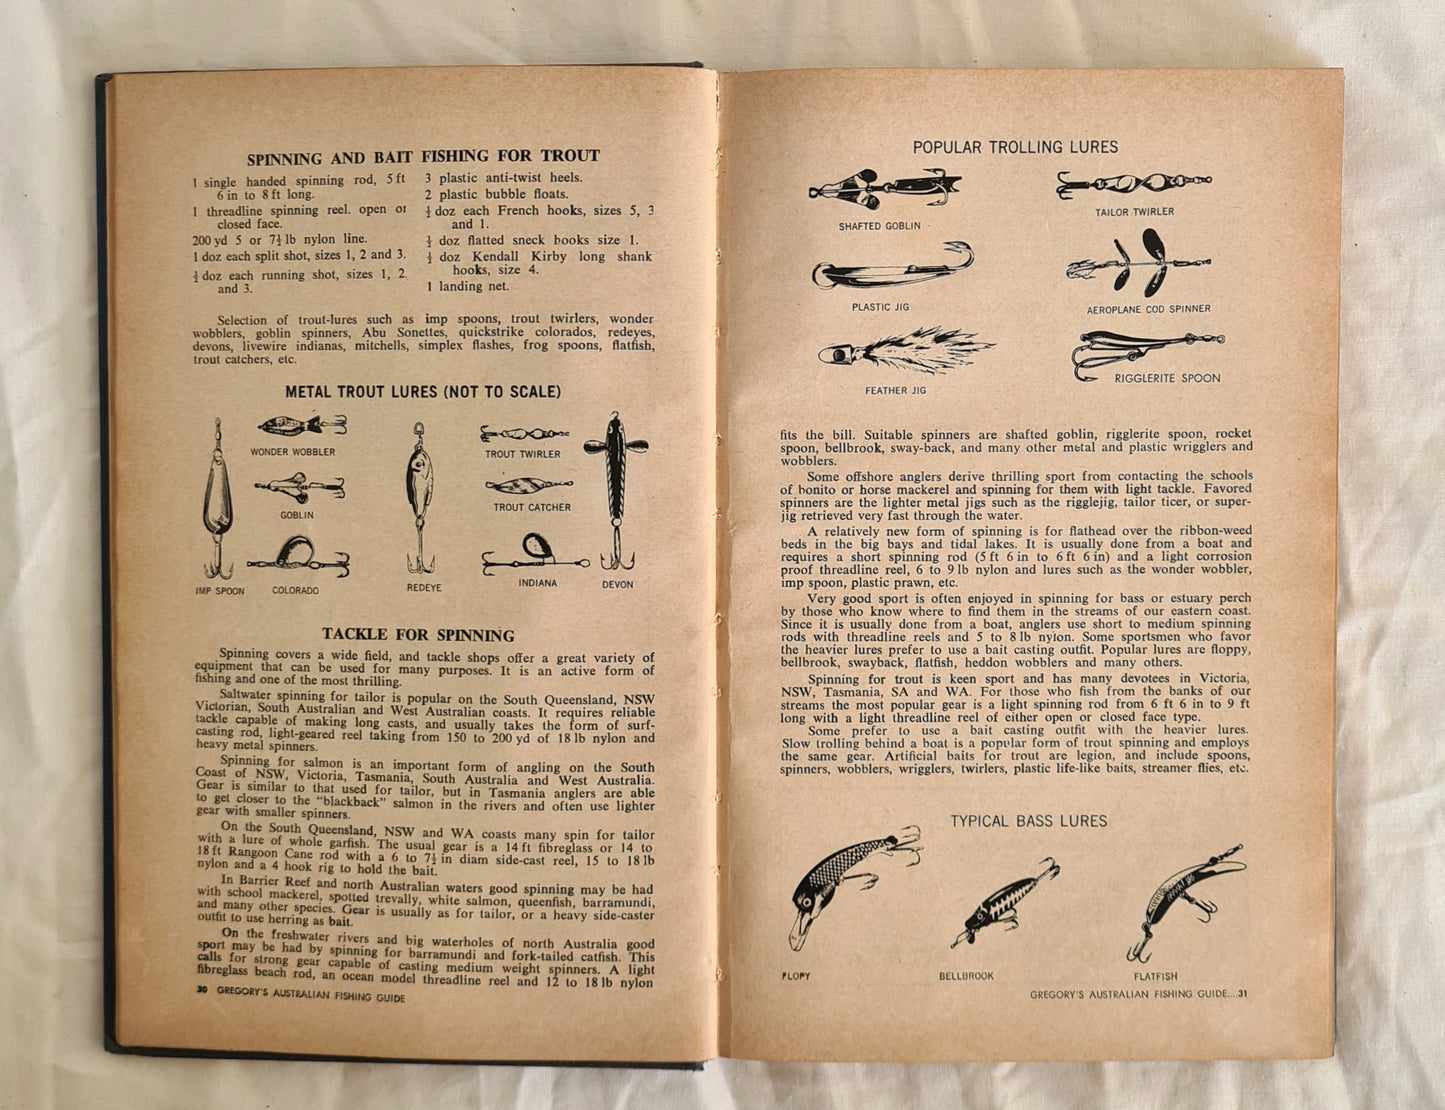 Gregory’s Australian Fishing Guide by Jack Pollard